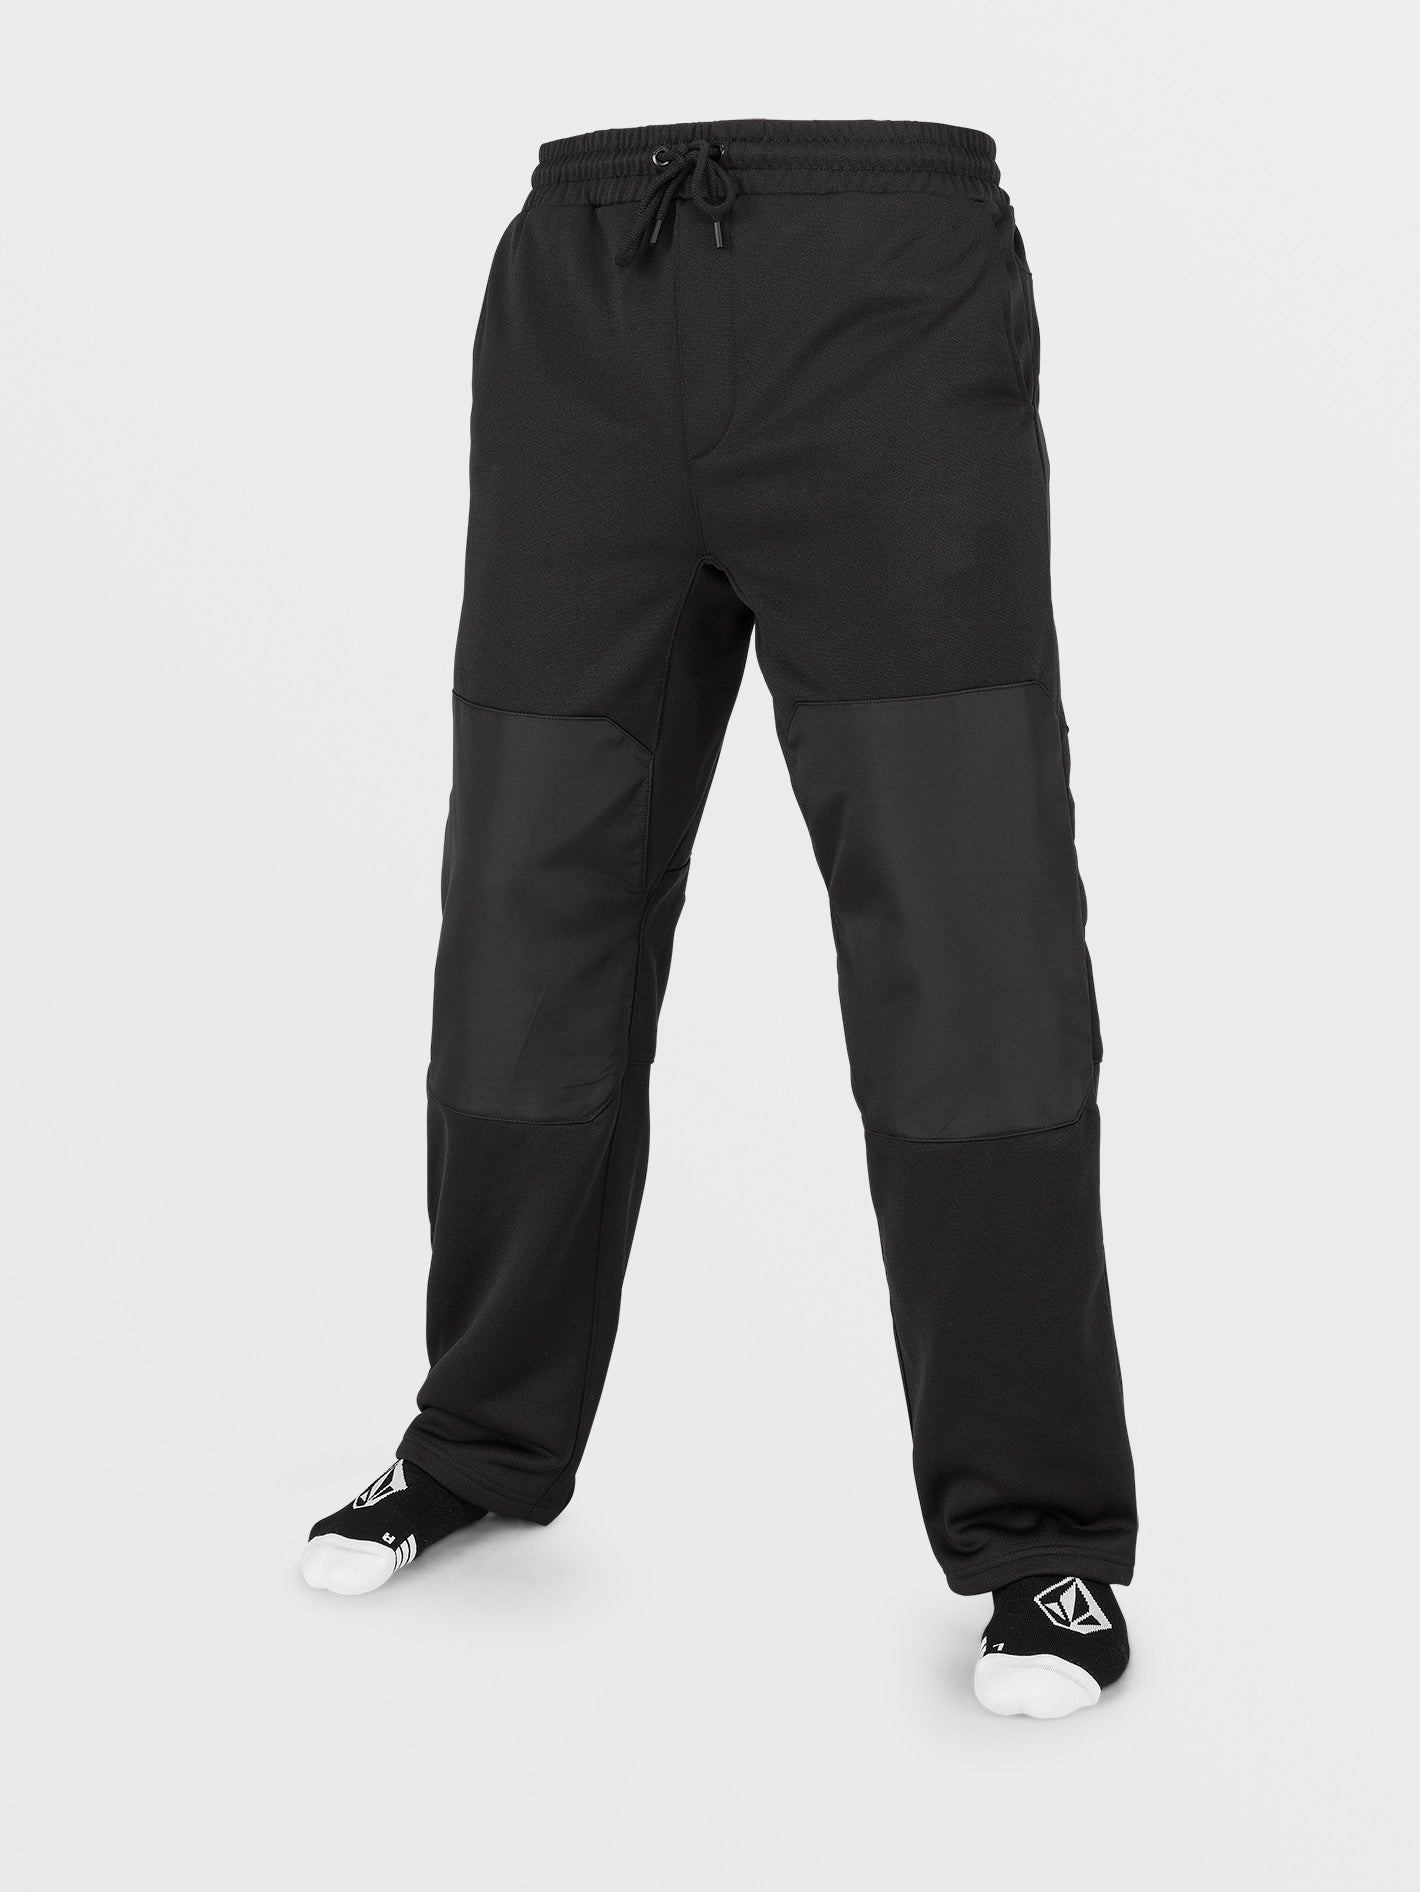 Men's Tech Fleece Pants - All in Motion Heather Gray XL